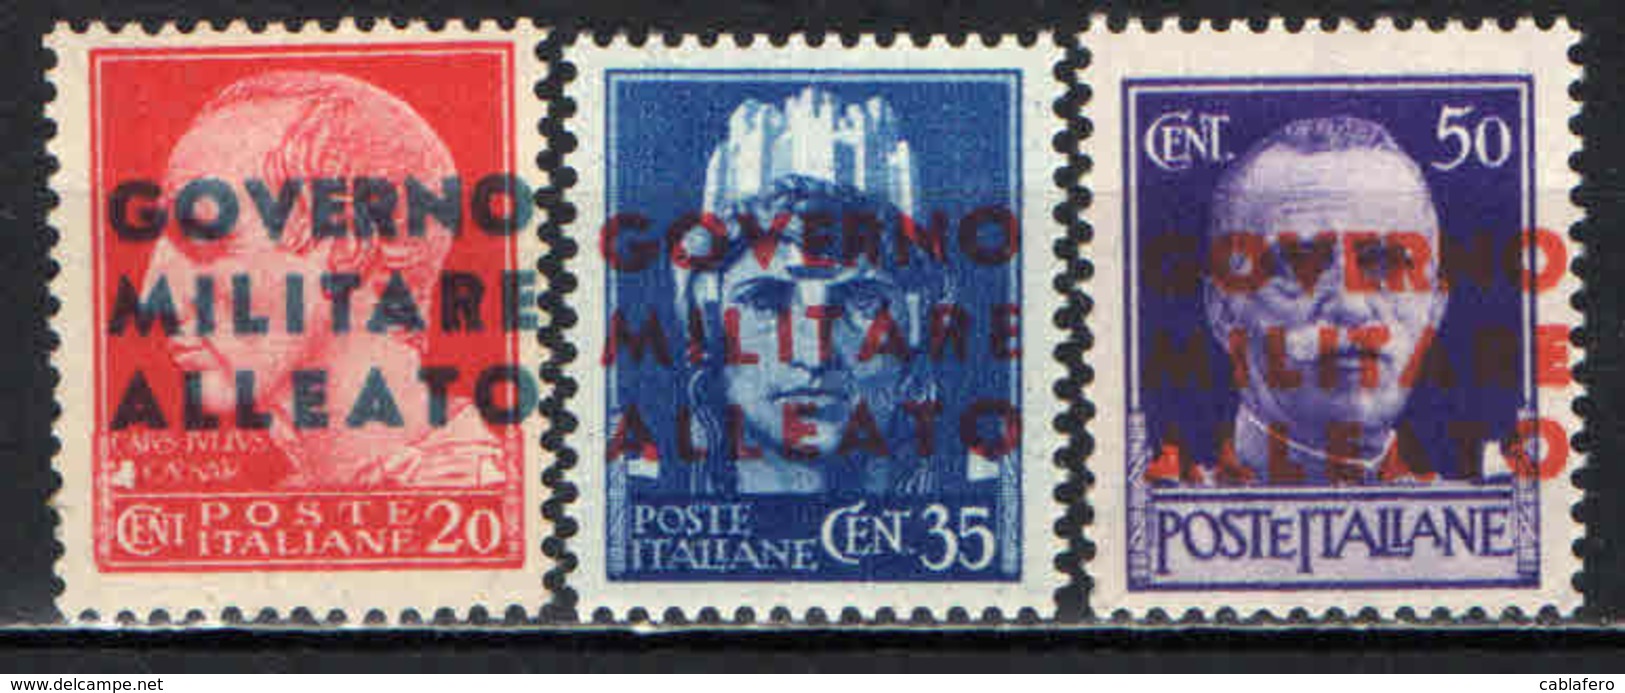 ITALIA - OCCUPAZIONE ANGLO-AMERICANA - 1943 - NAPOLI - MNH - Britisch-am. Bes. Neapel